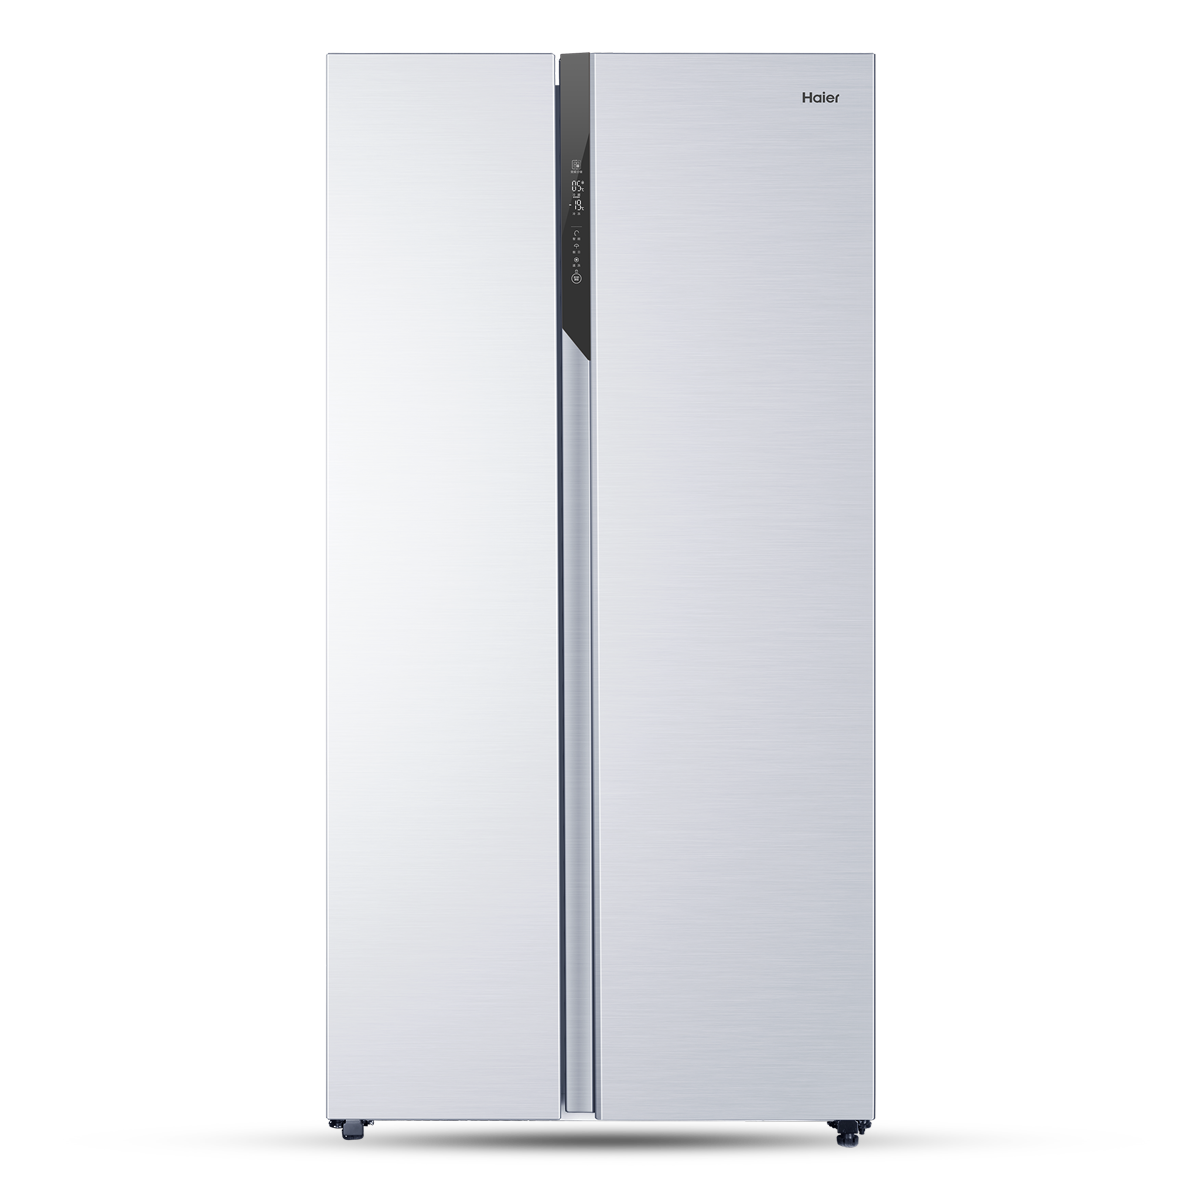 海尔Haier冰箱 BCD-528WDPF 说明书